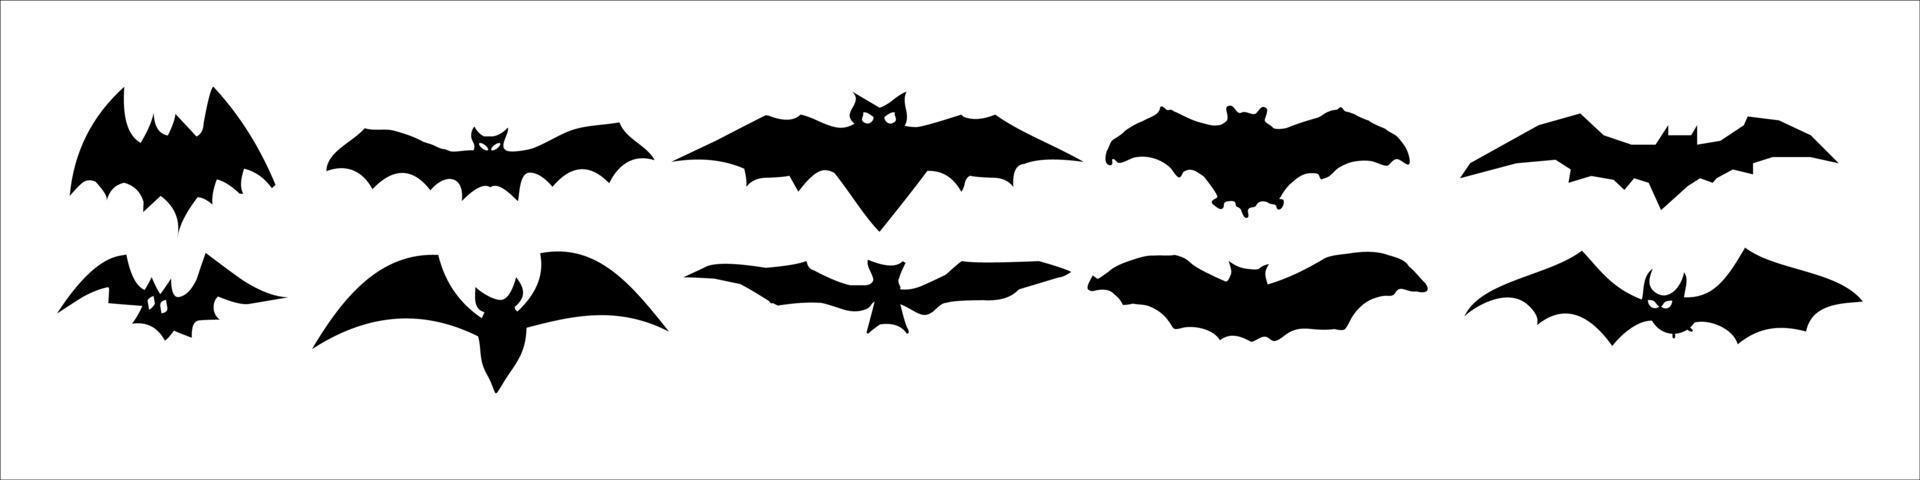 siluetas negras de murciélagos vector